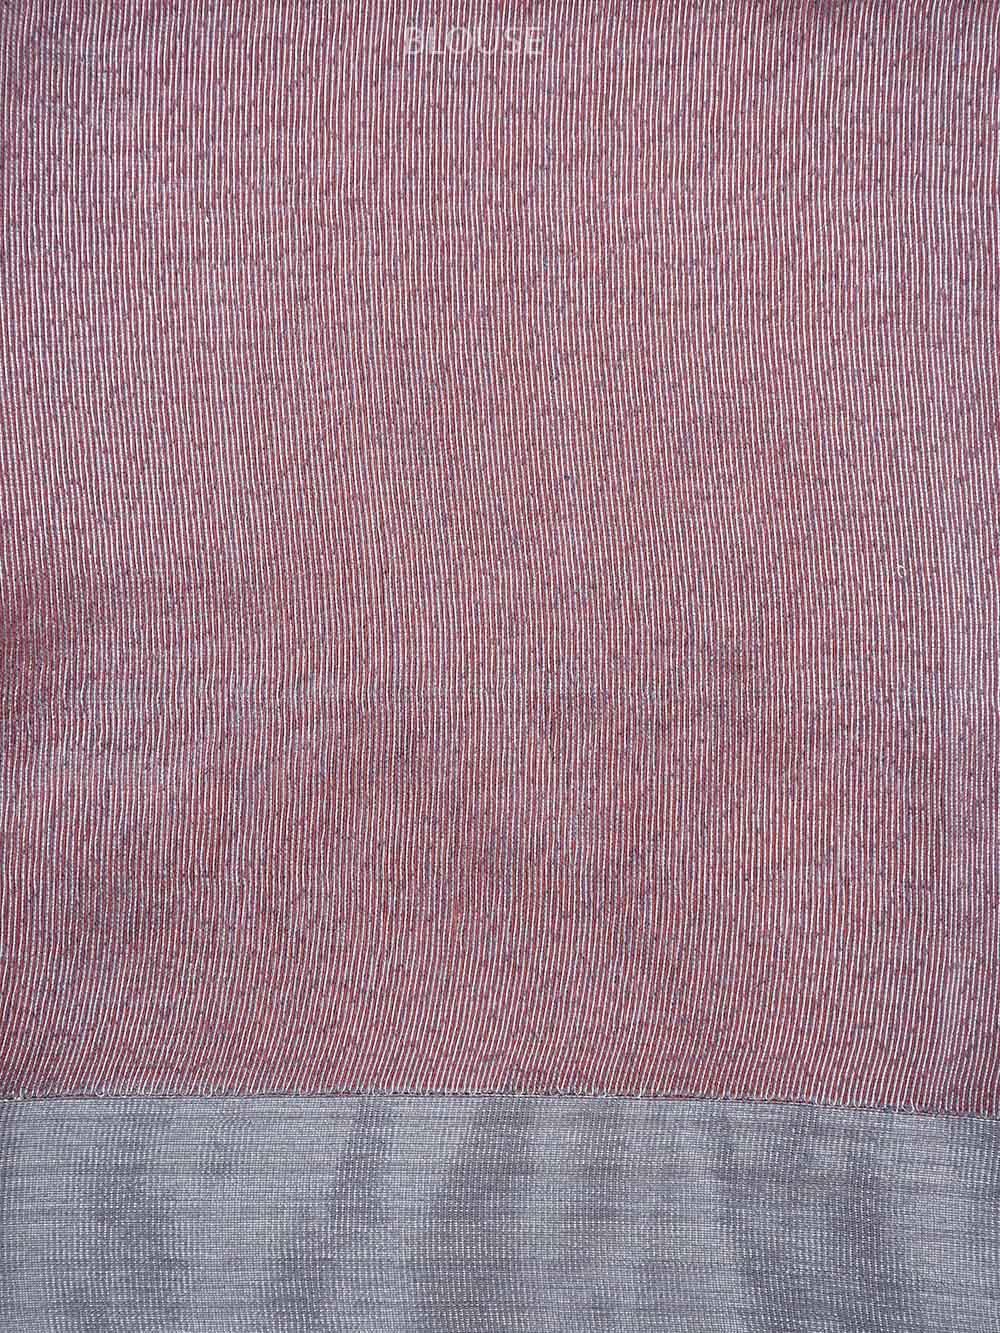 Coral Peach Jaal Linen Handloom Banarasi Saree - Sacred Weaves